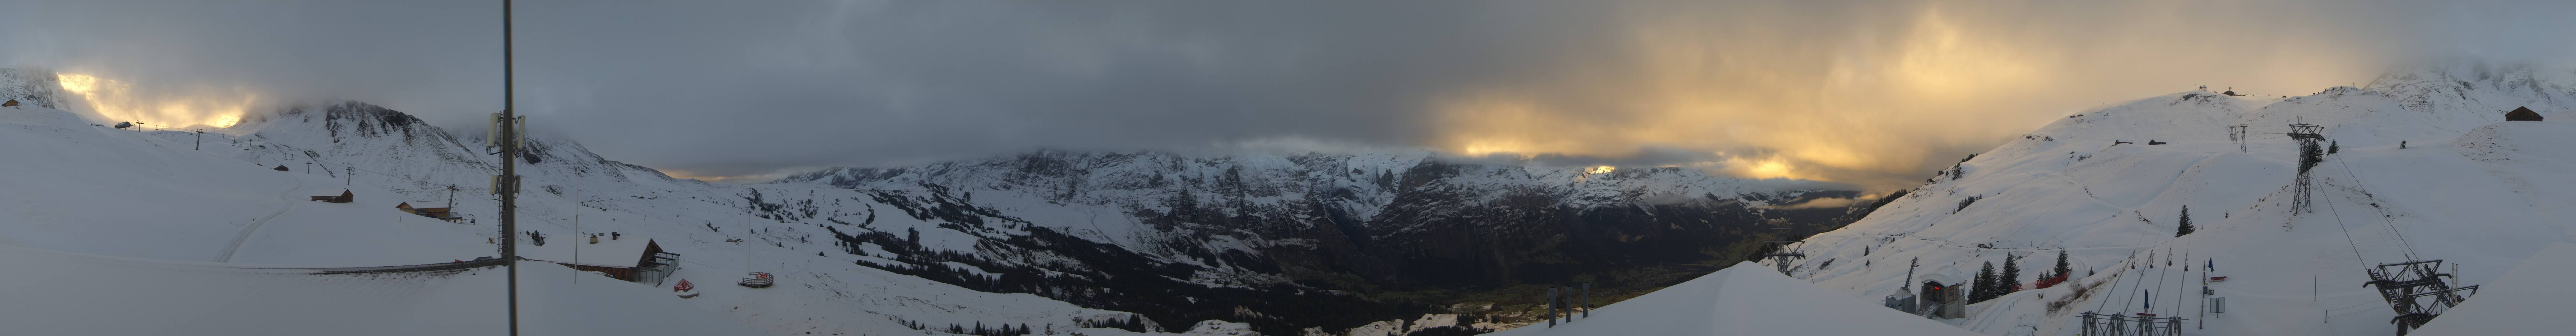 Grindelwald: Jungfraubahnen - First